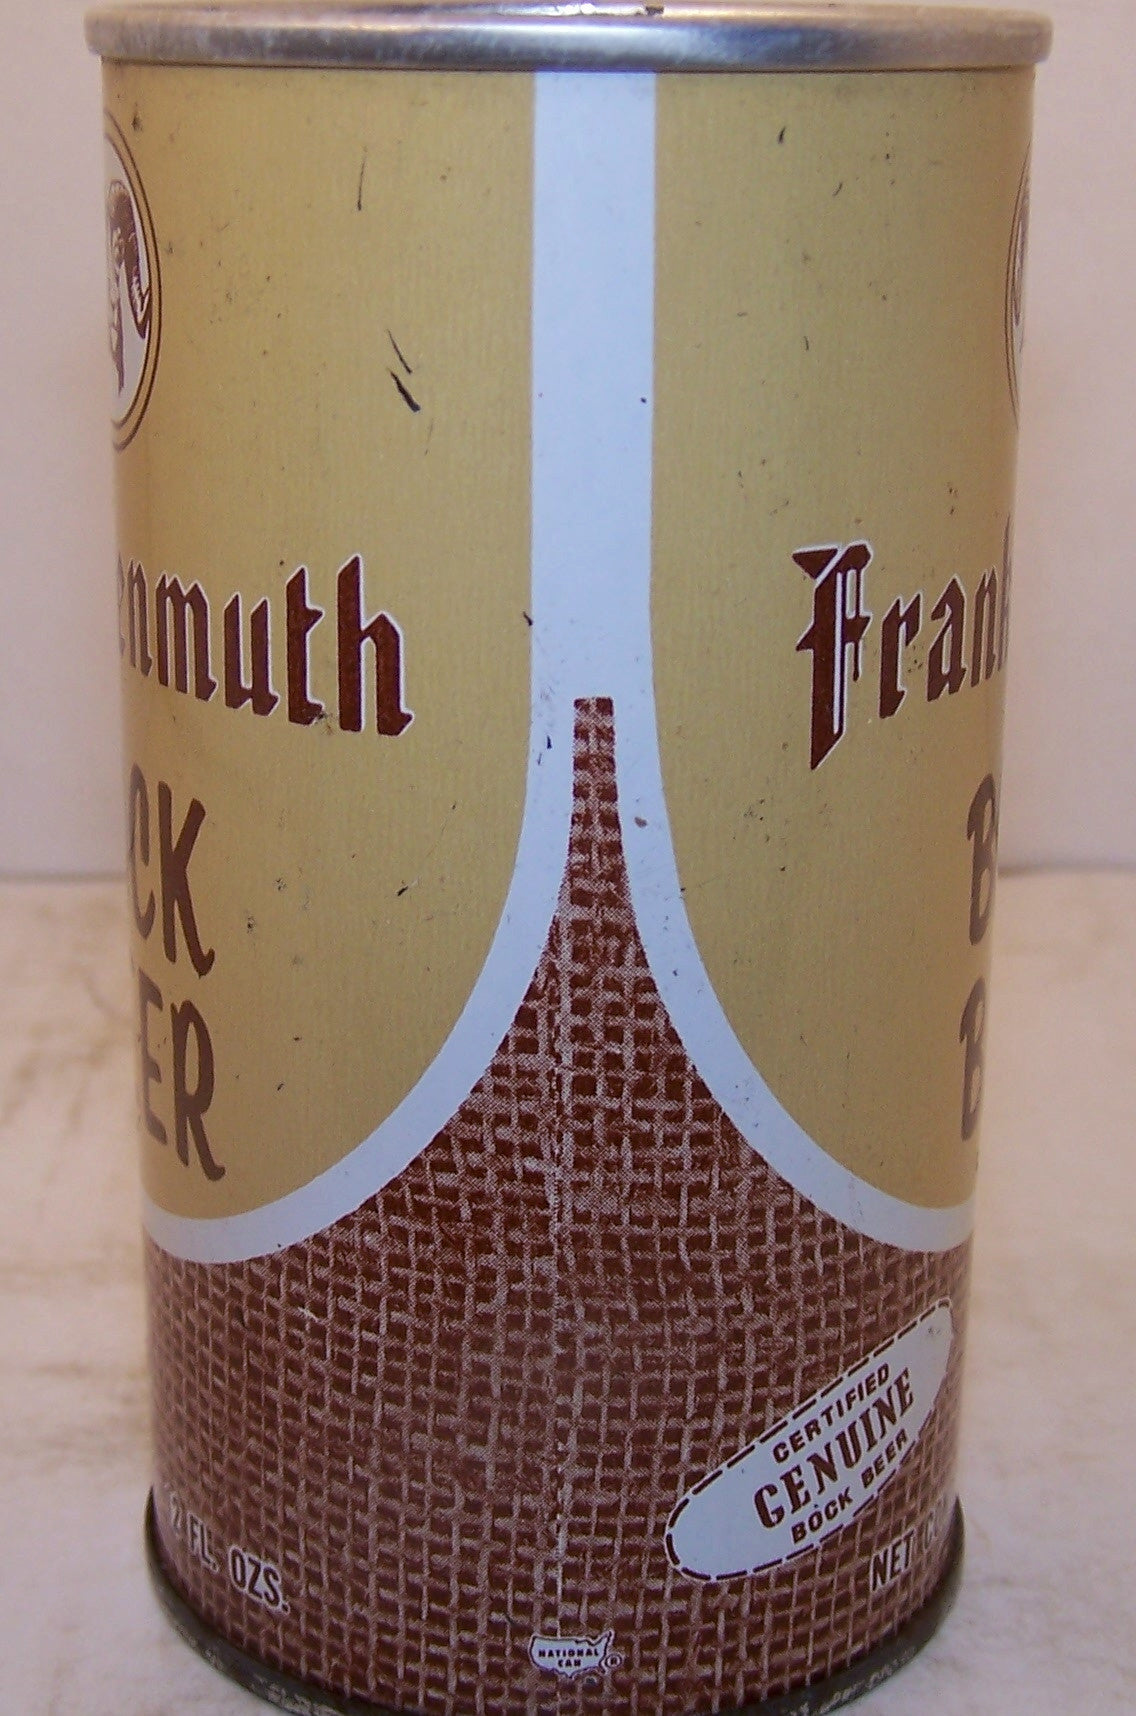 Frankenmuth Bock Beer USBC II  66-12 Grade 1 Sold on 2/22/15